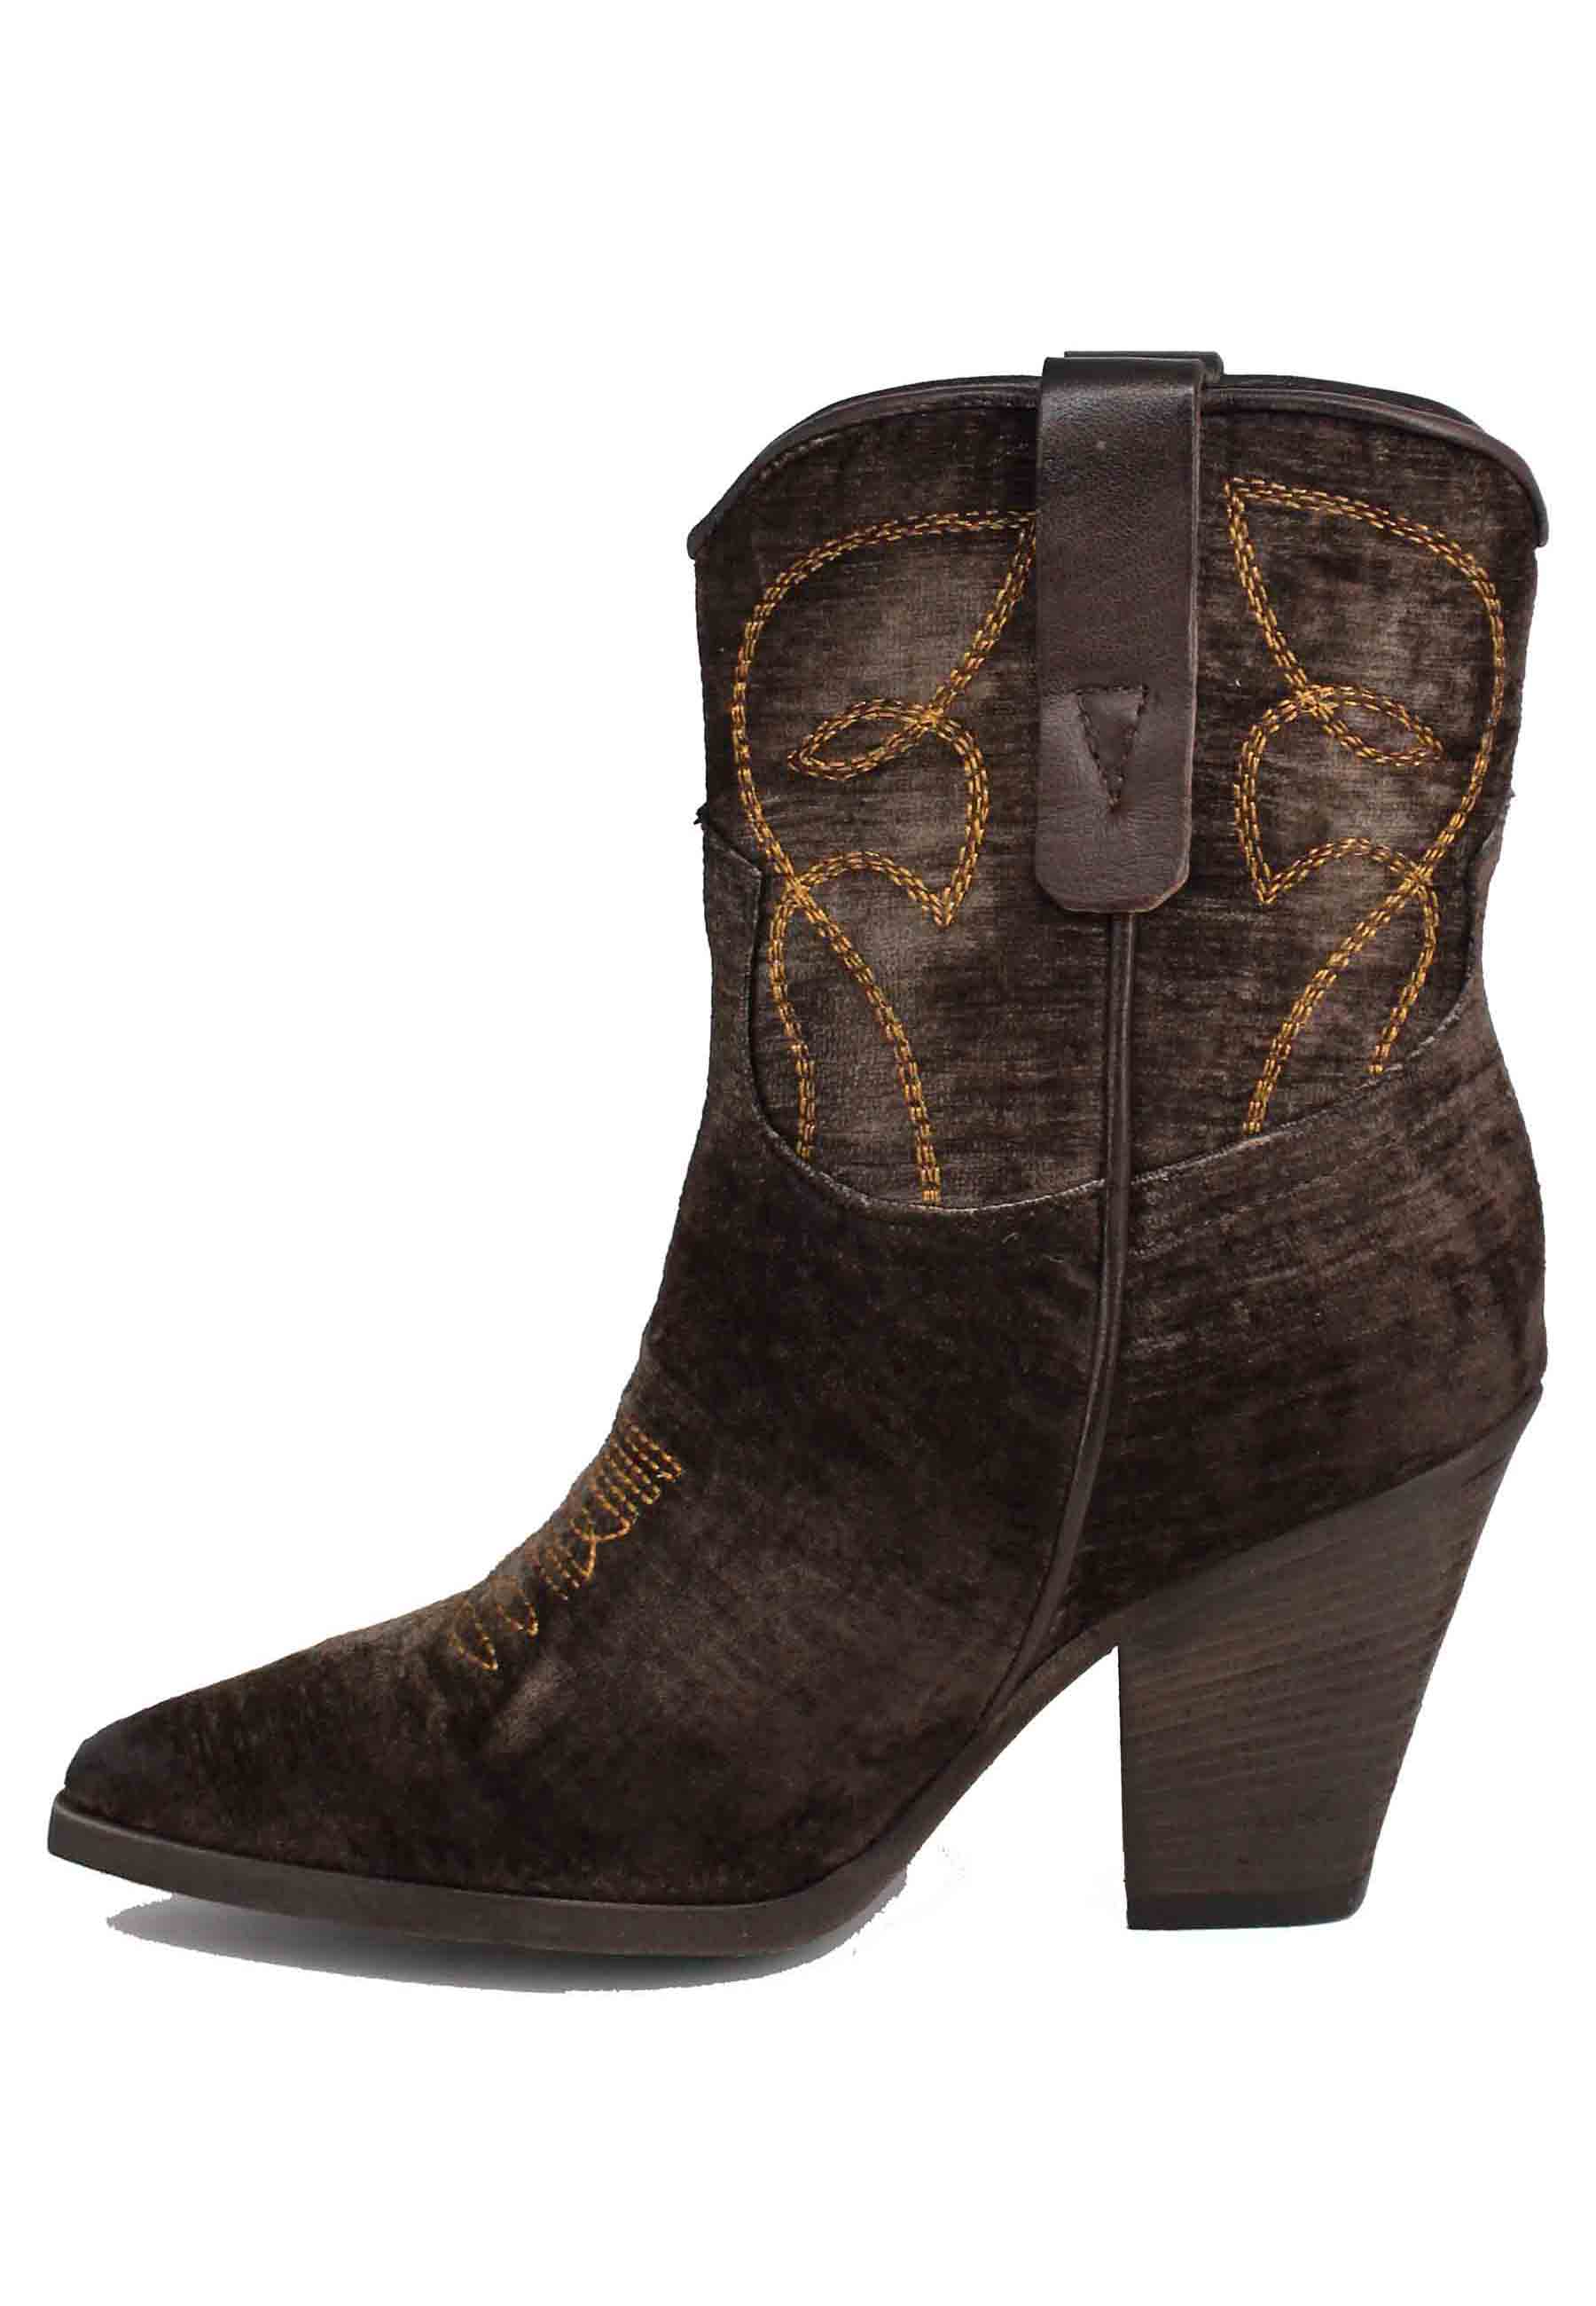 Women's Texan boots in dark brown velvet with high heel